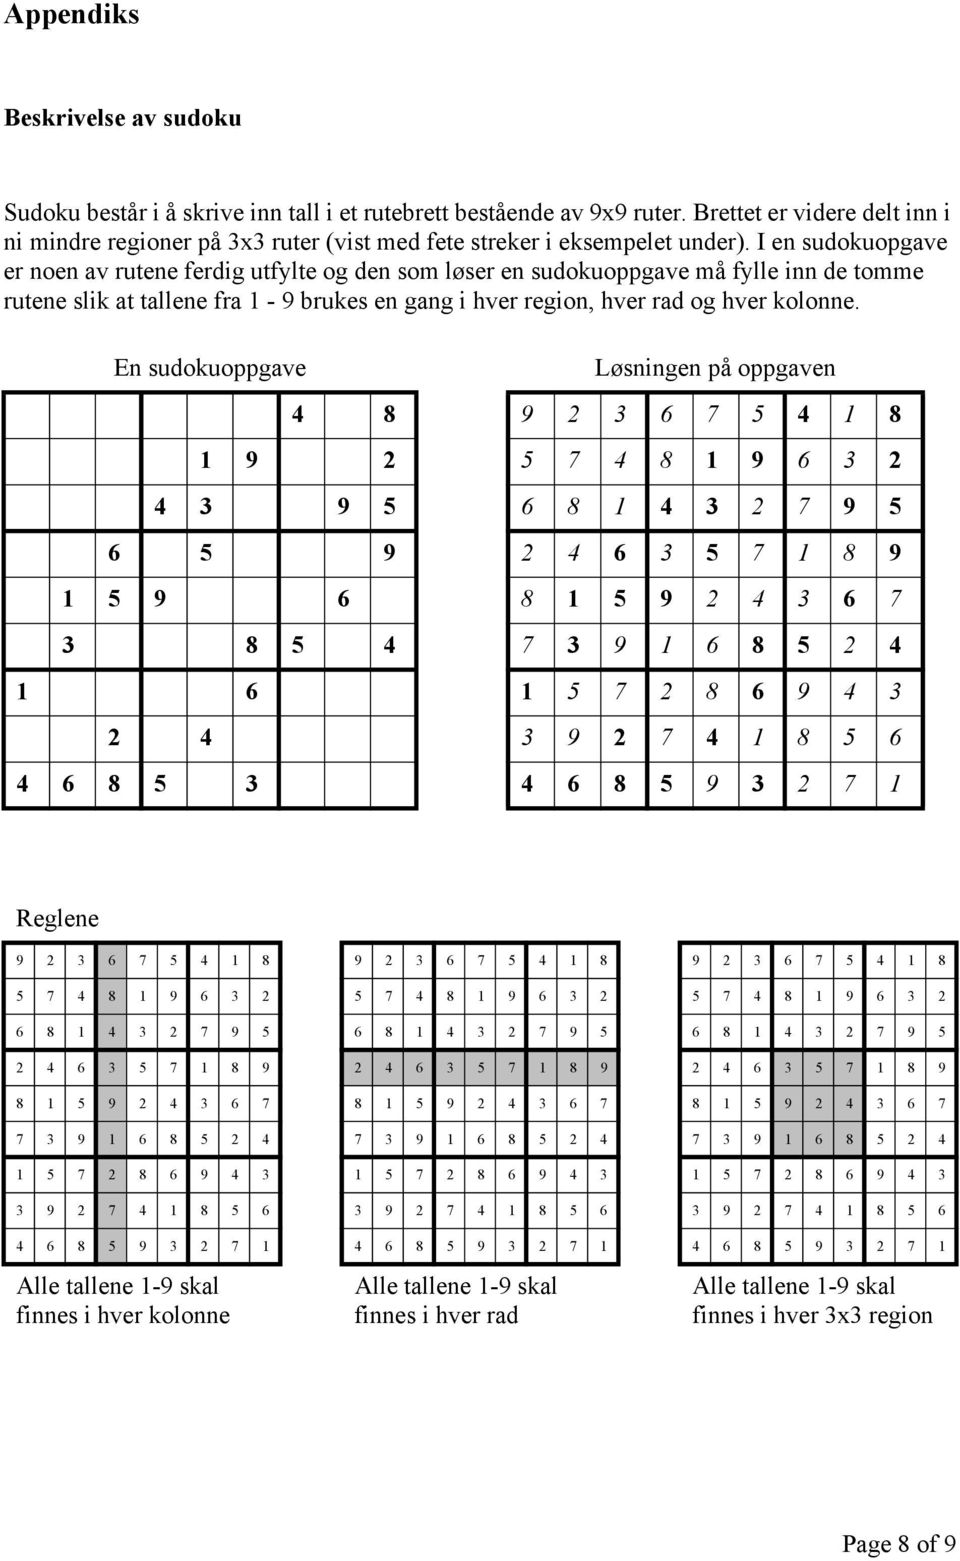 I en sudokuopgave er noen av rutene ferdig utfylte og den som løser en sudokuoppgave må fylle inn de tomme rutene slik at tallene fra 1-9 brukes en gang i hver region, hver rad og hver kolonne.